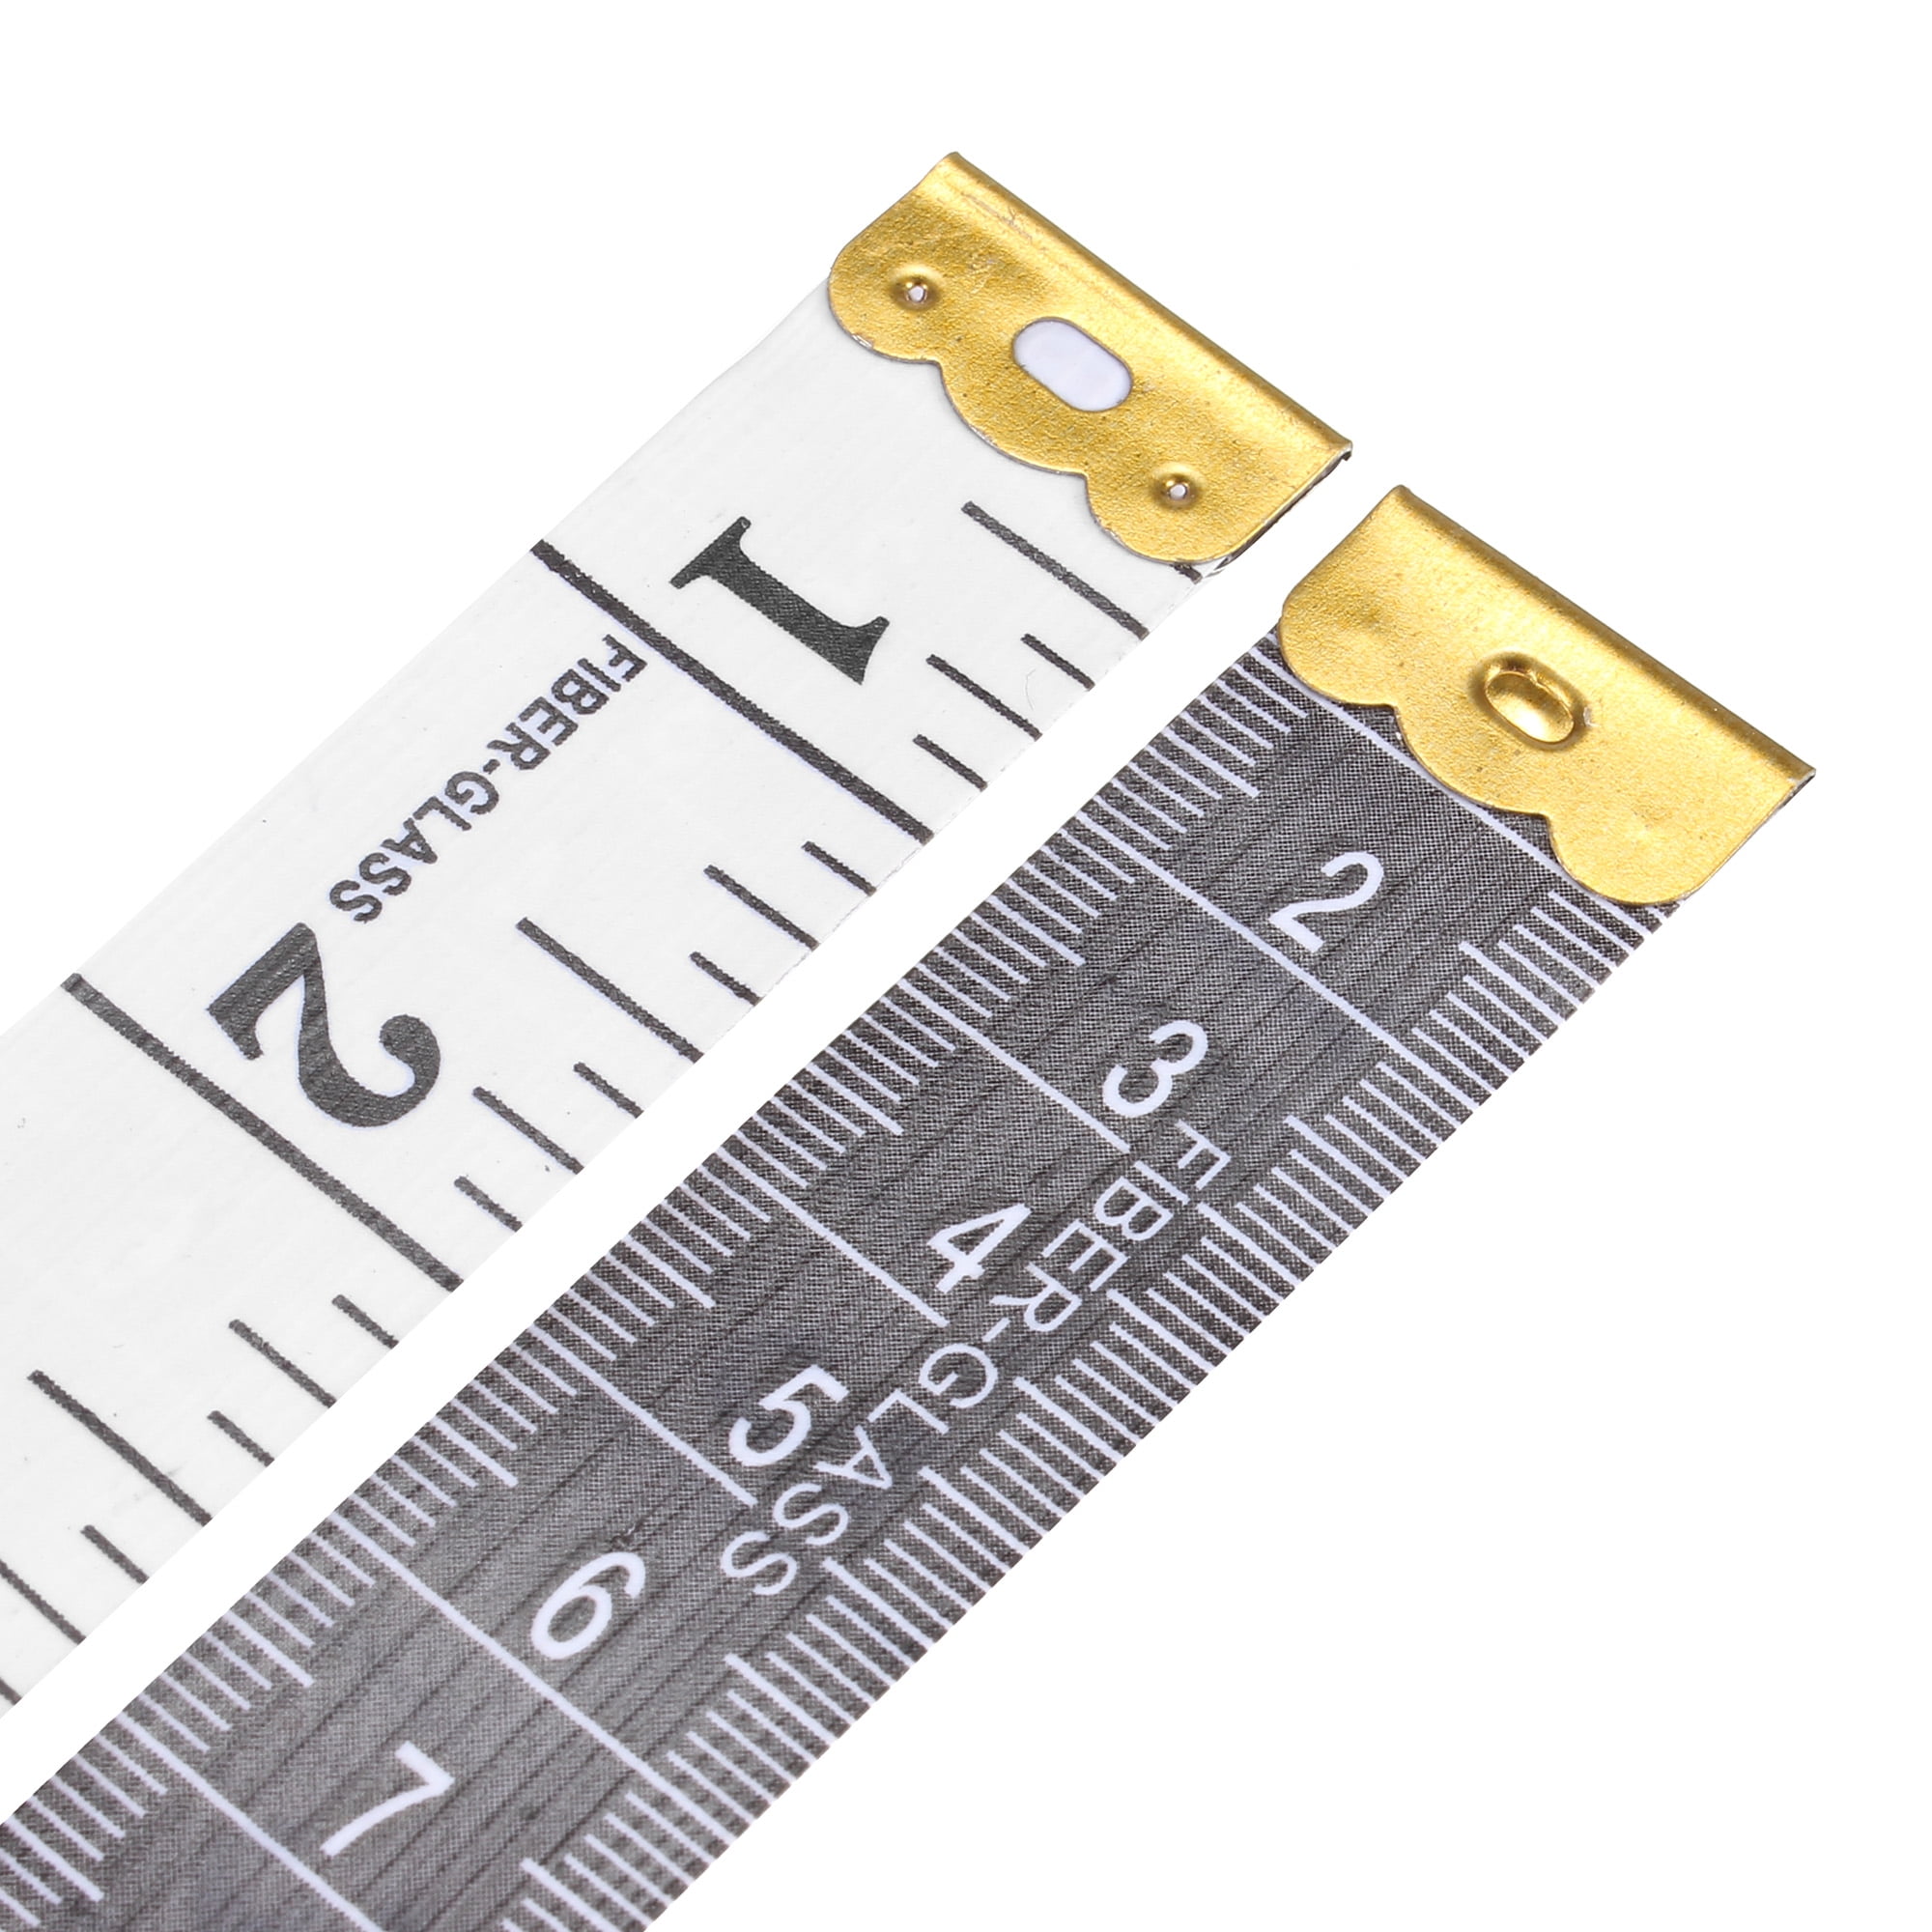 Measuring tape Sola Uni - Matic UM; 5 m - 50012601 - Measuring